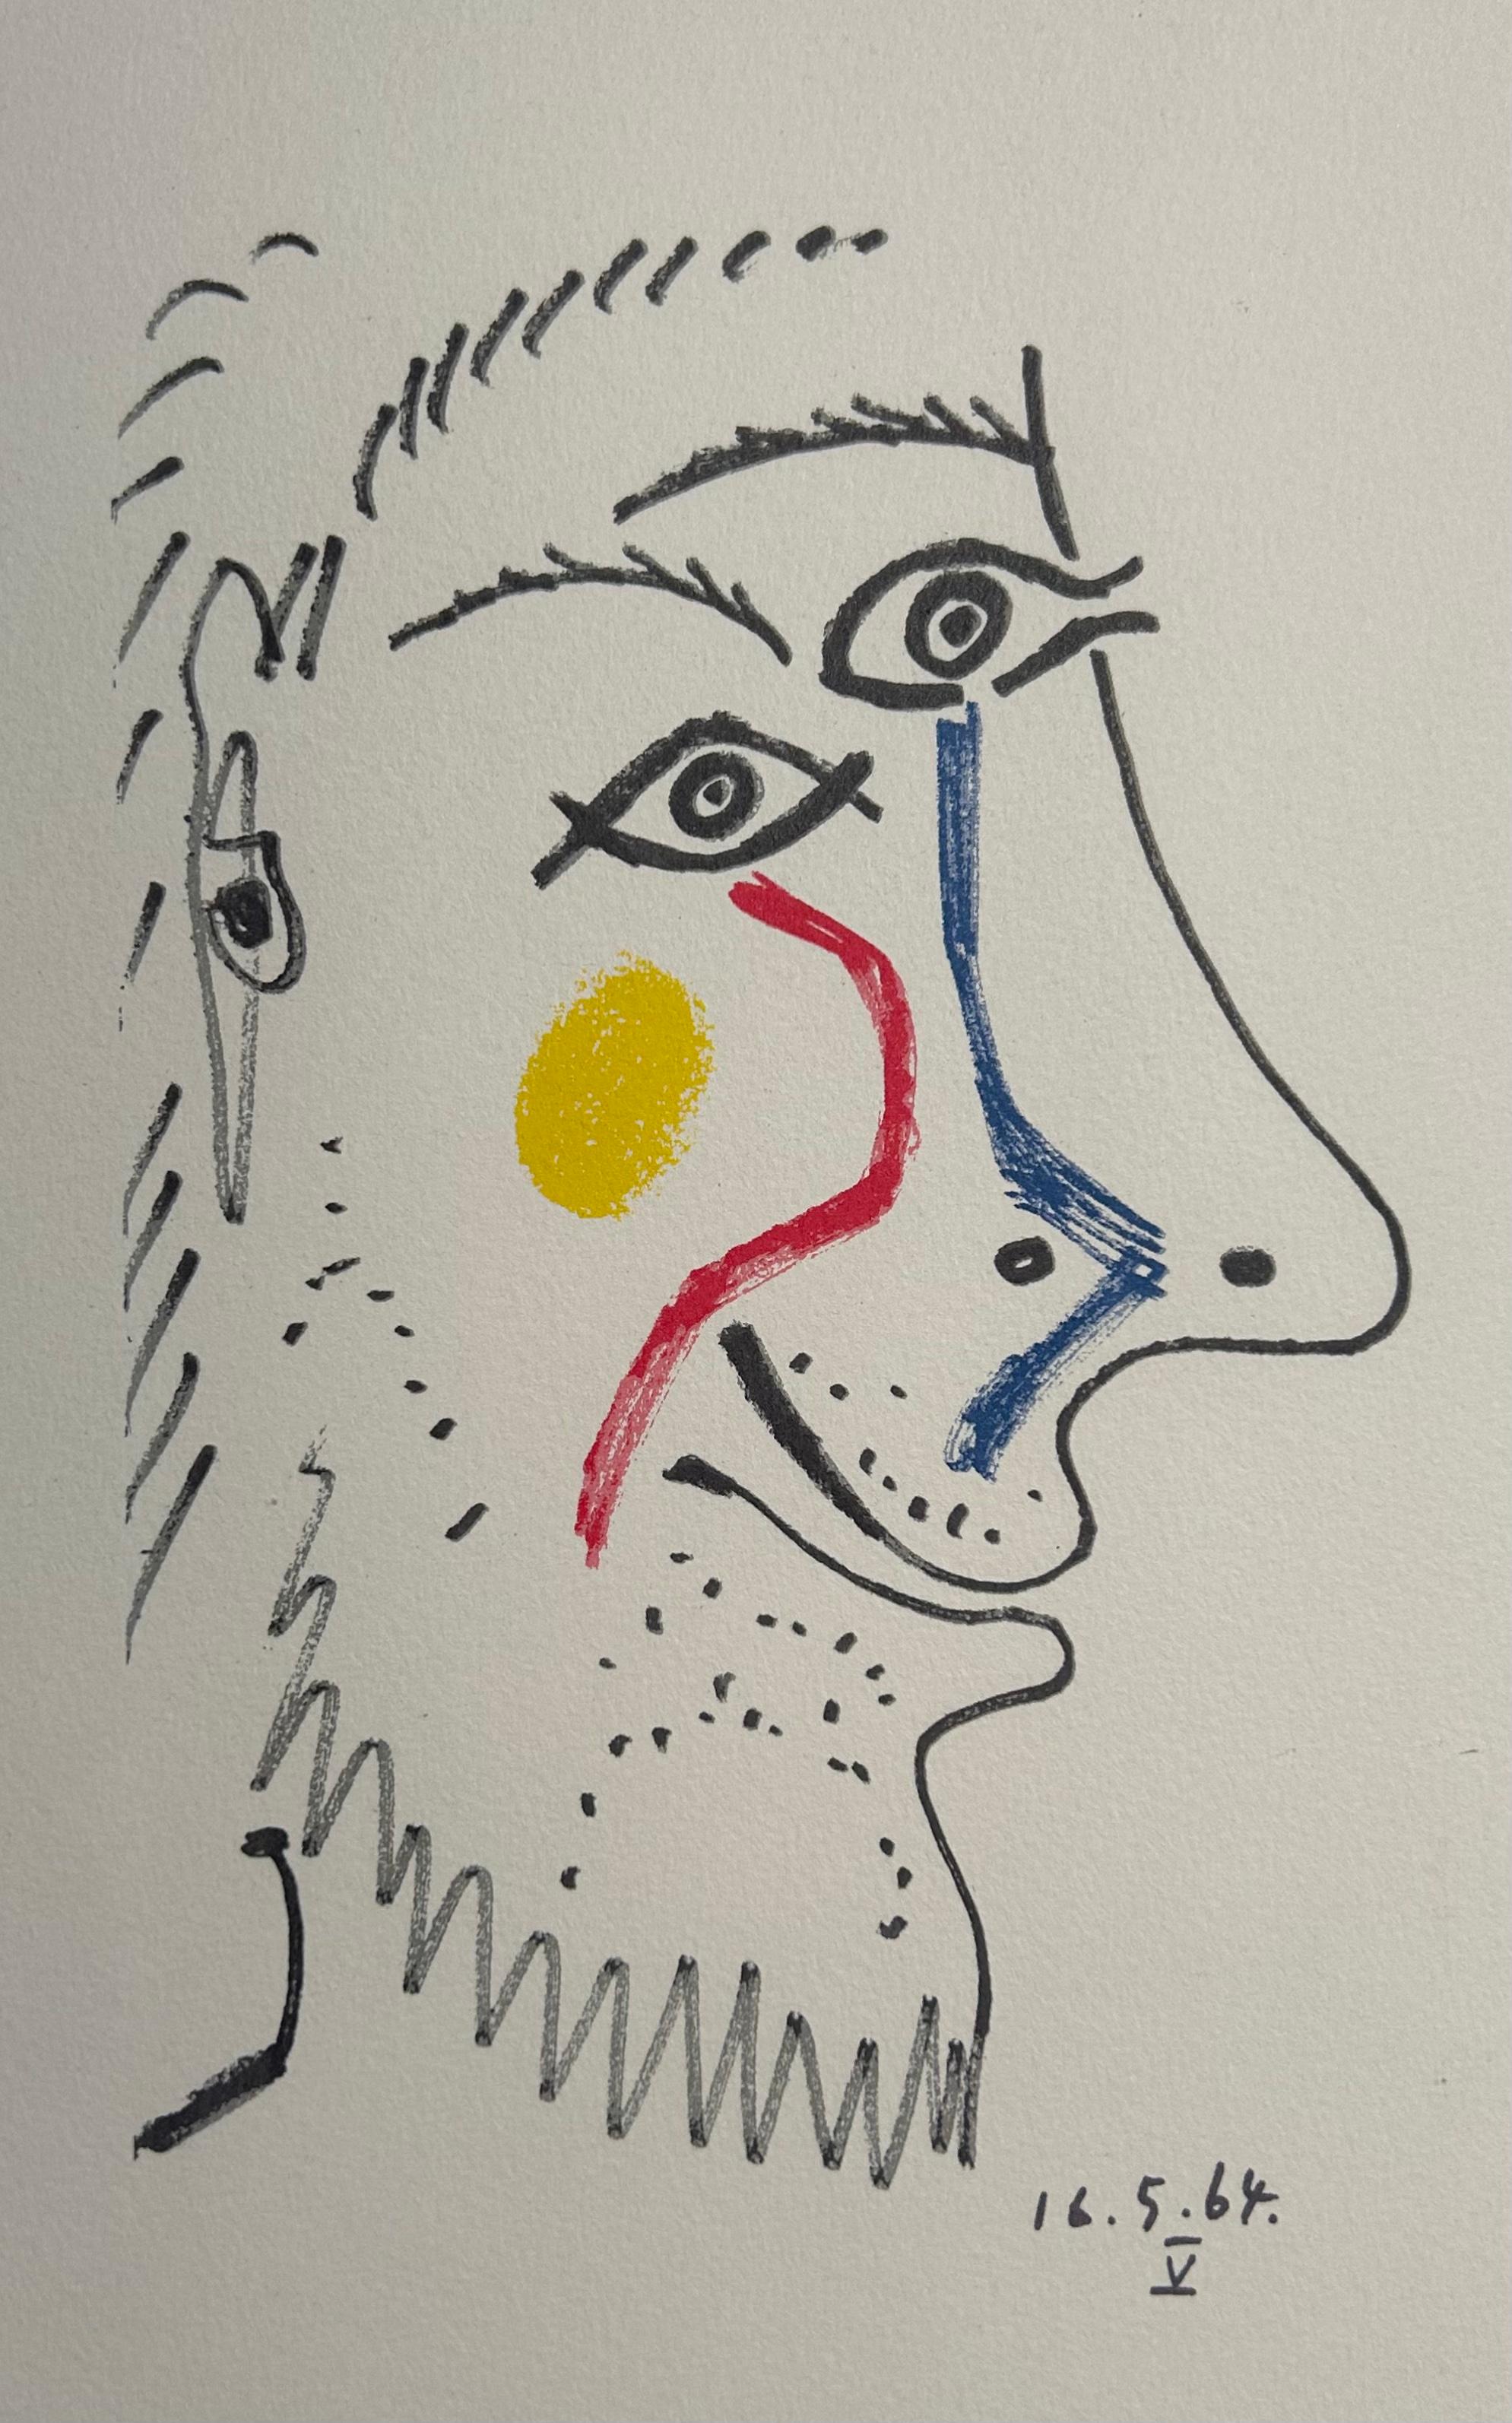 Le portrait d'un homme par Picasso, adapté d'un dessin réalisé en 1964 en une lithographie qui attire l'attention par son travail de ligne unique et l'application de couleurs primaires. 

La lithographie est tirée du carnet de croquis Le Goût du